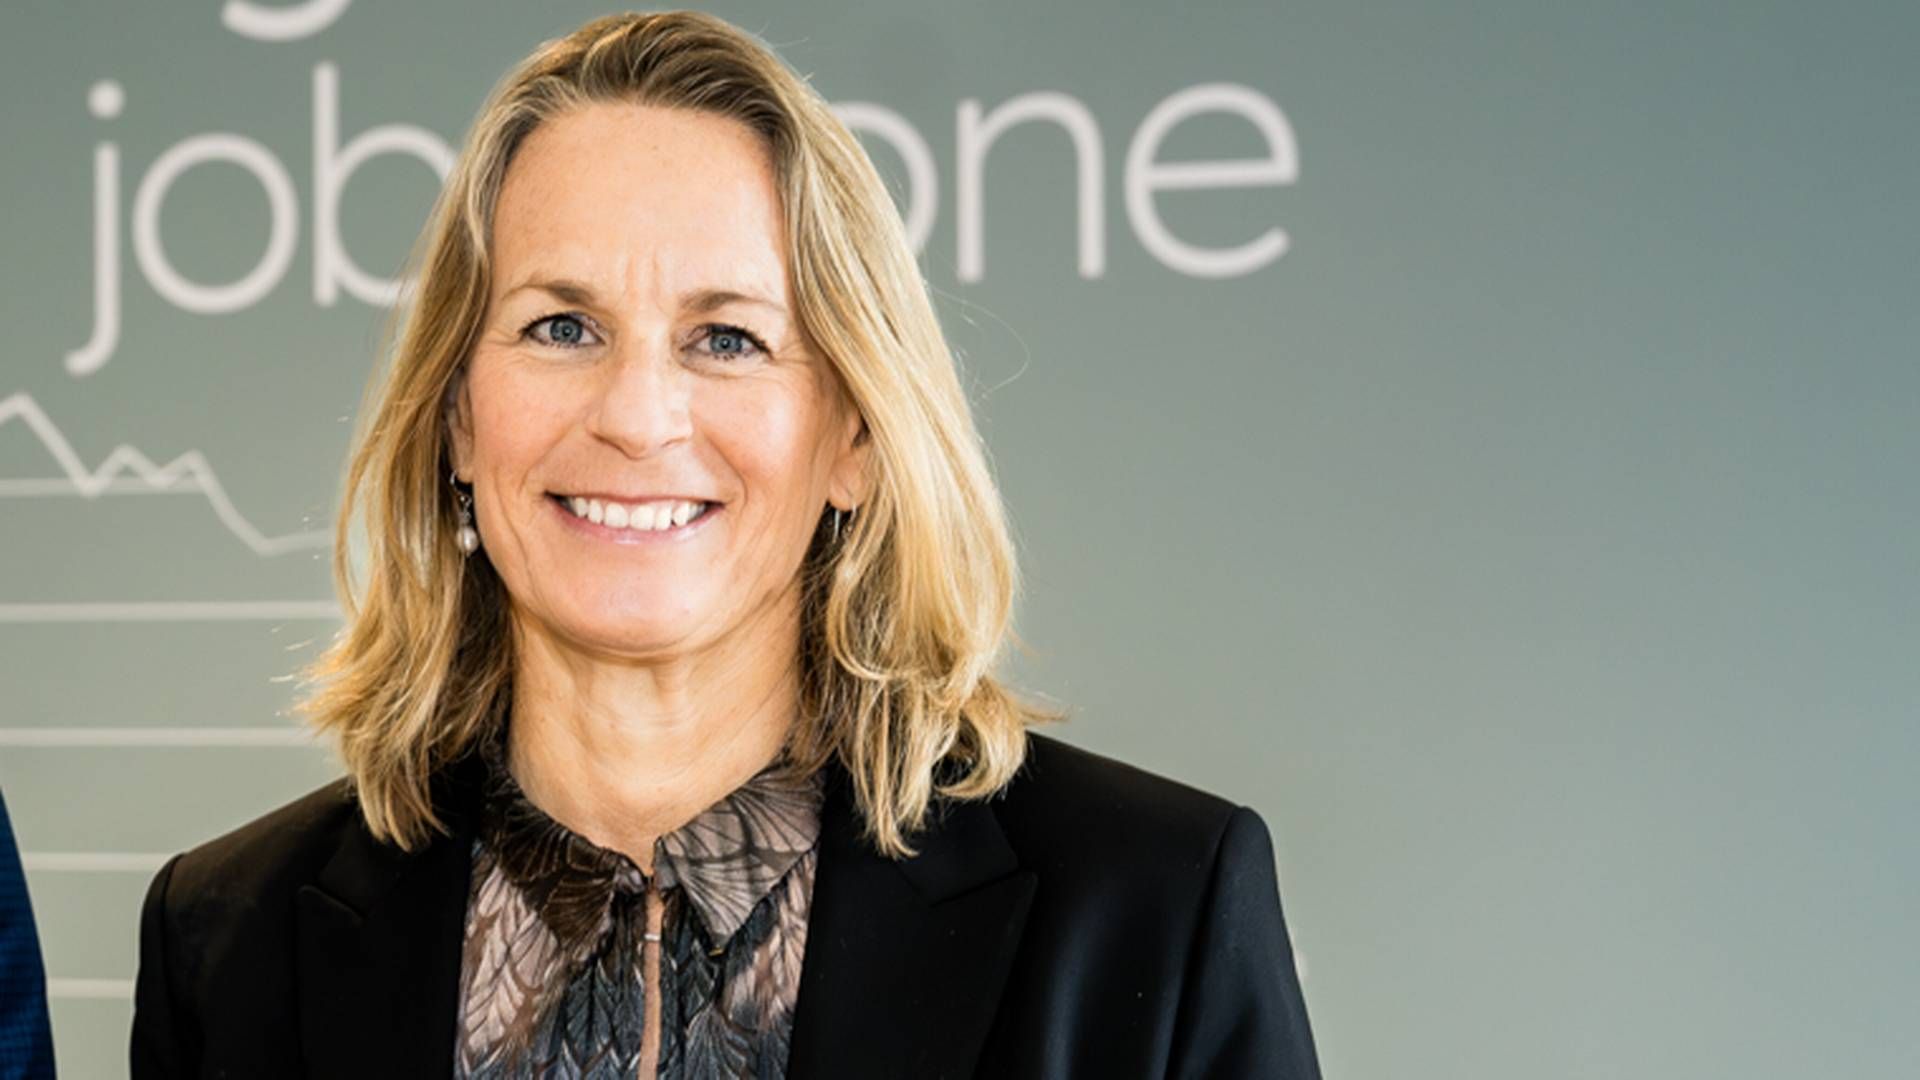 Corporate vice president Kristina Lee har ansvar for at sikre Novo Nordisks produktion adgang til vedvarende energi. | Foto: Pr